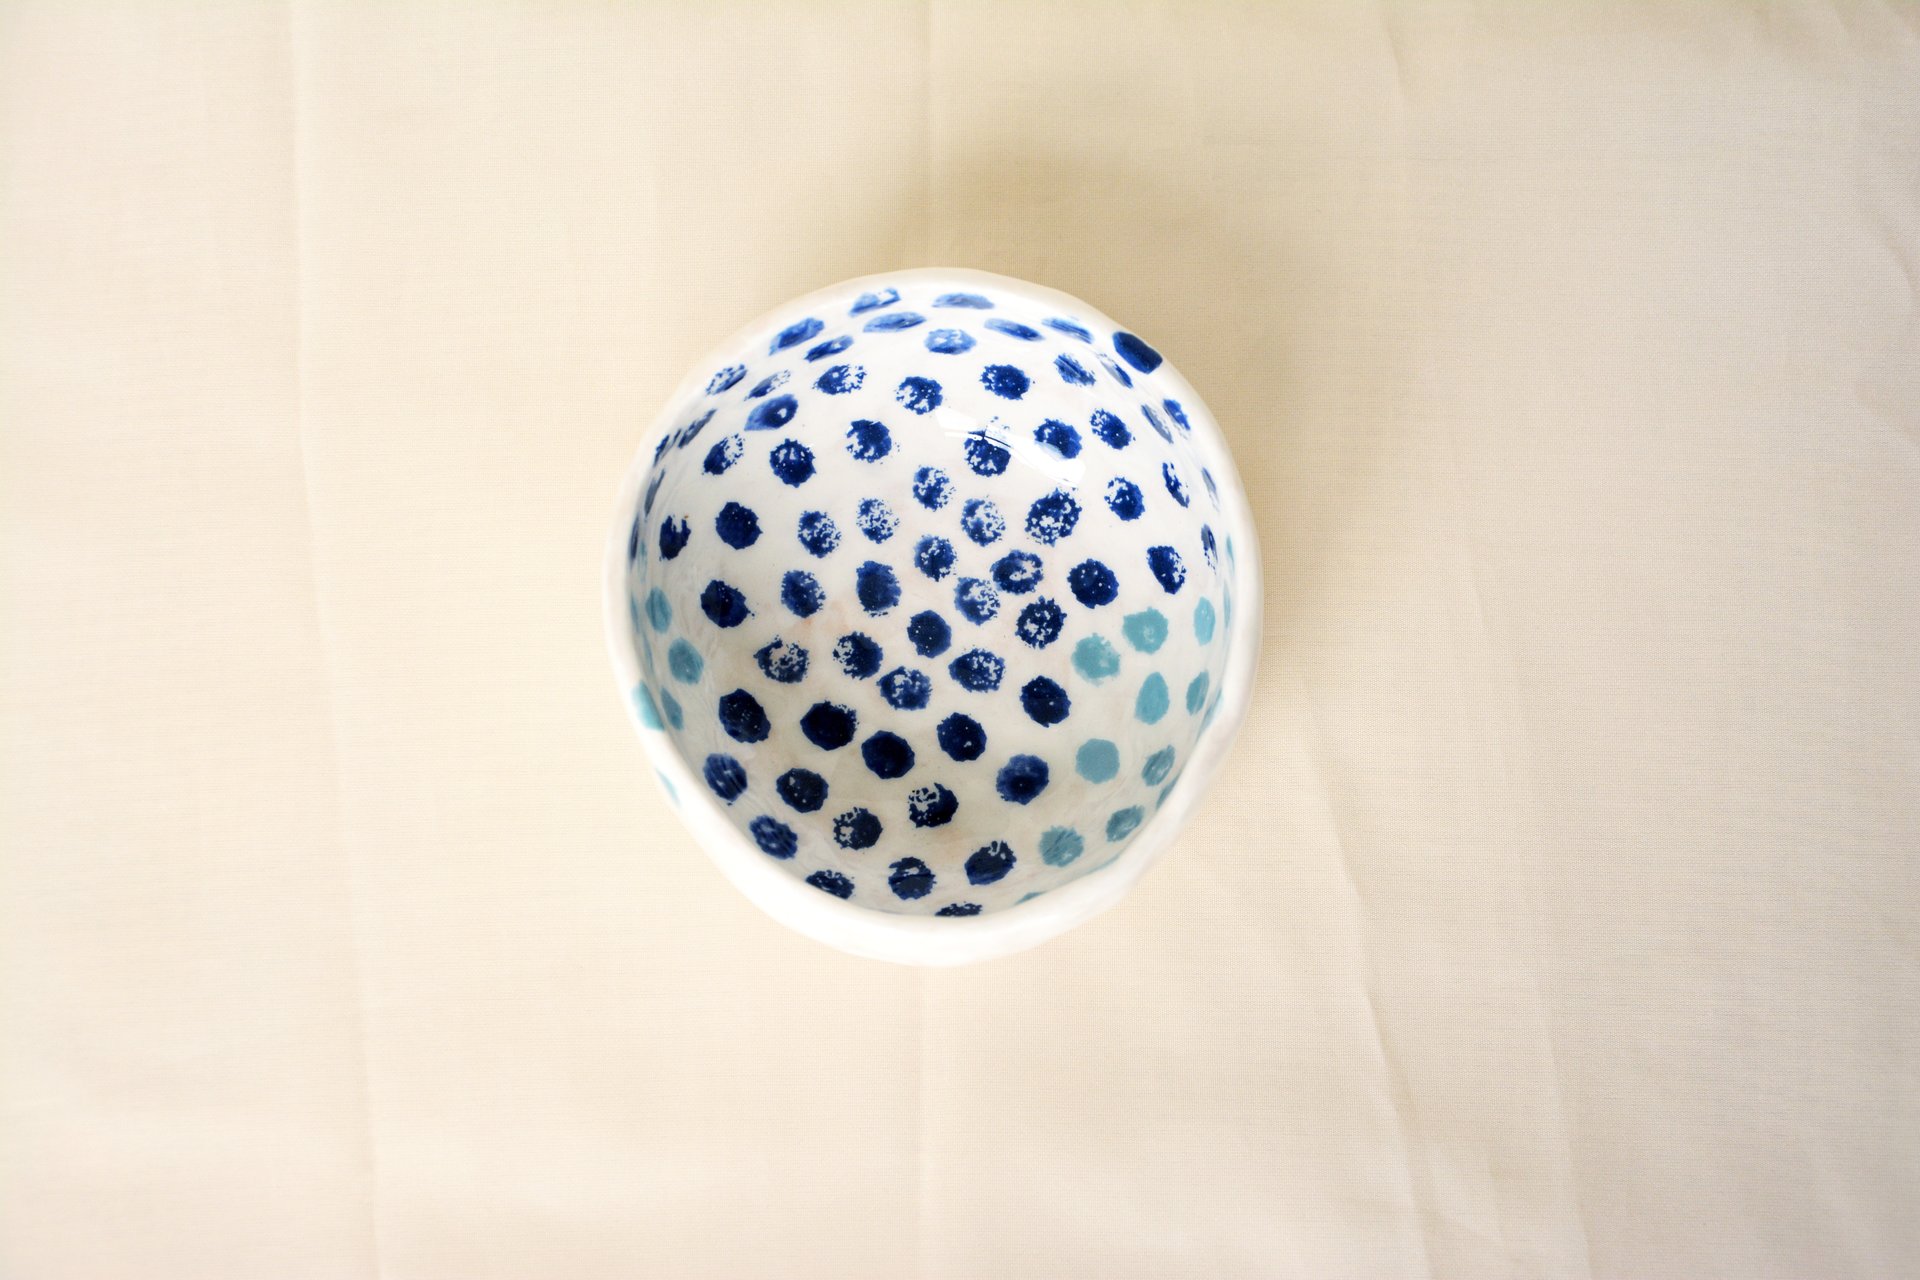 Синие точки на белом - Керамические тарелки, высота - 5 см, диаметр - 11 см, фото 2 из 3.